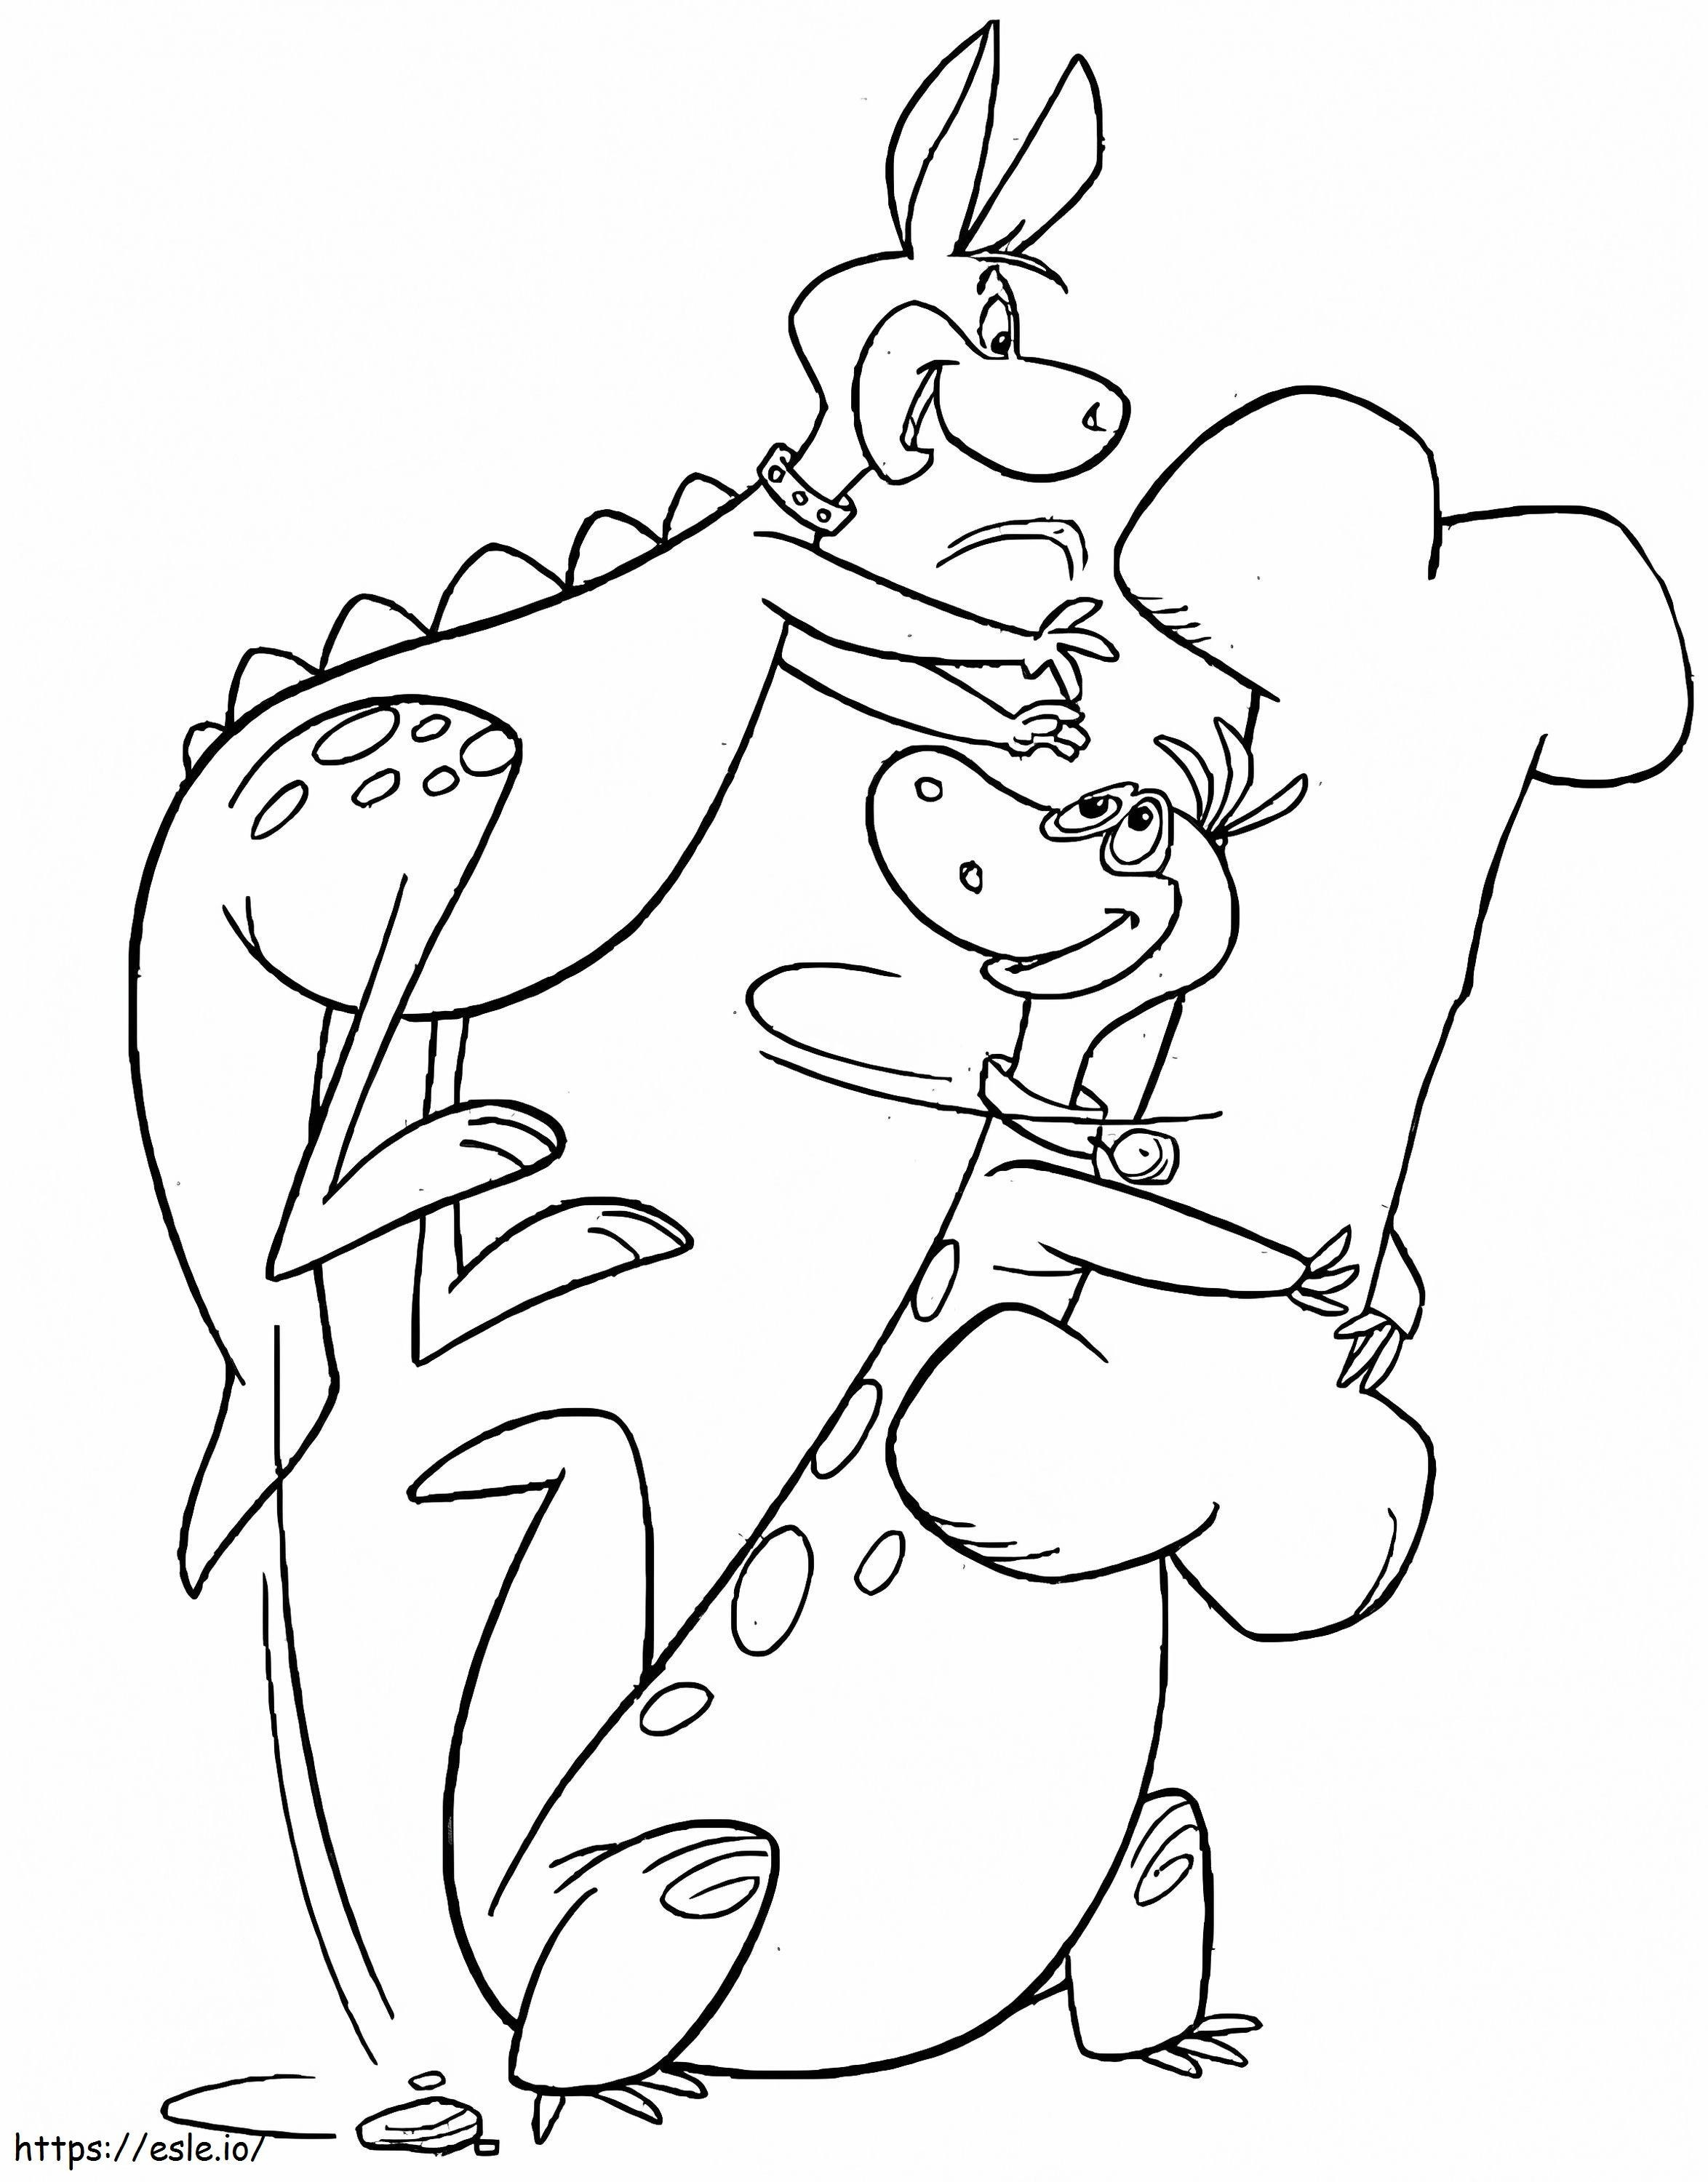 Hoppig en Dino uit de Flintstones kleurplaat kleurplaat